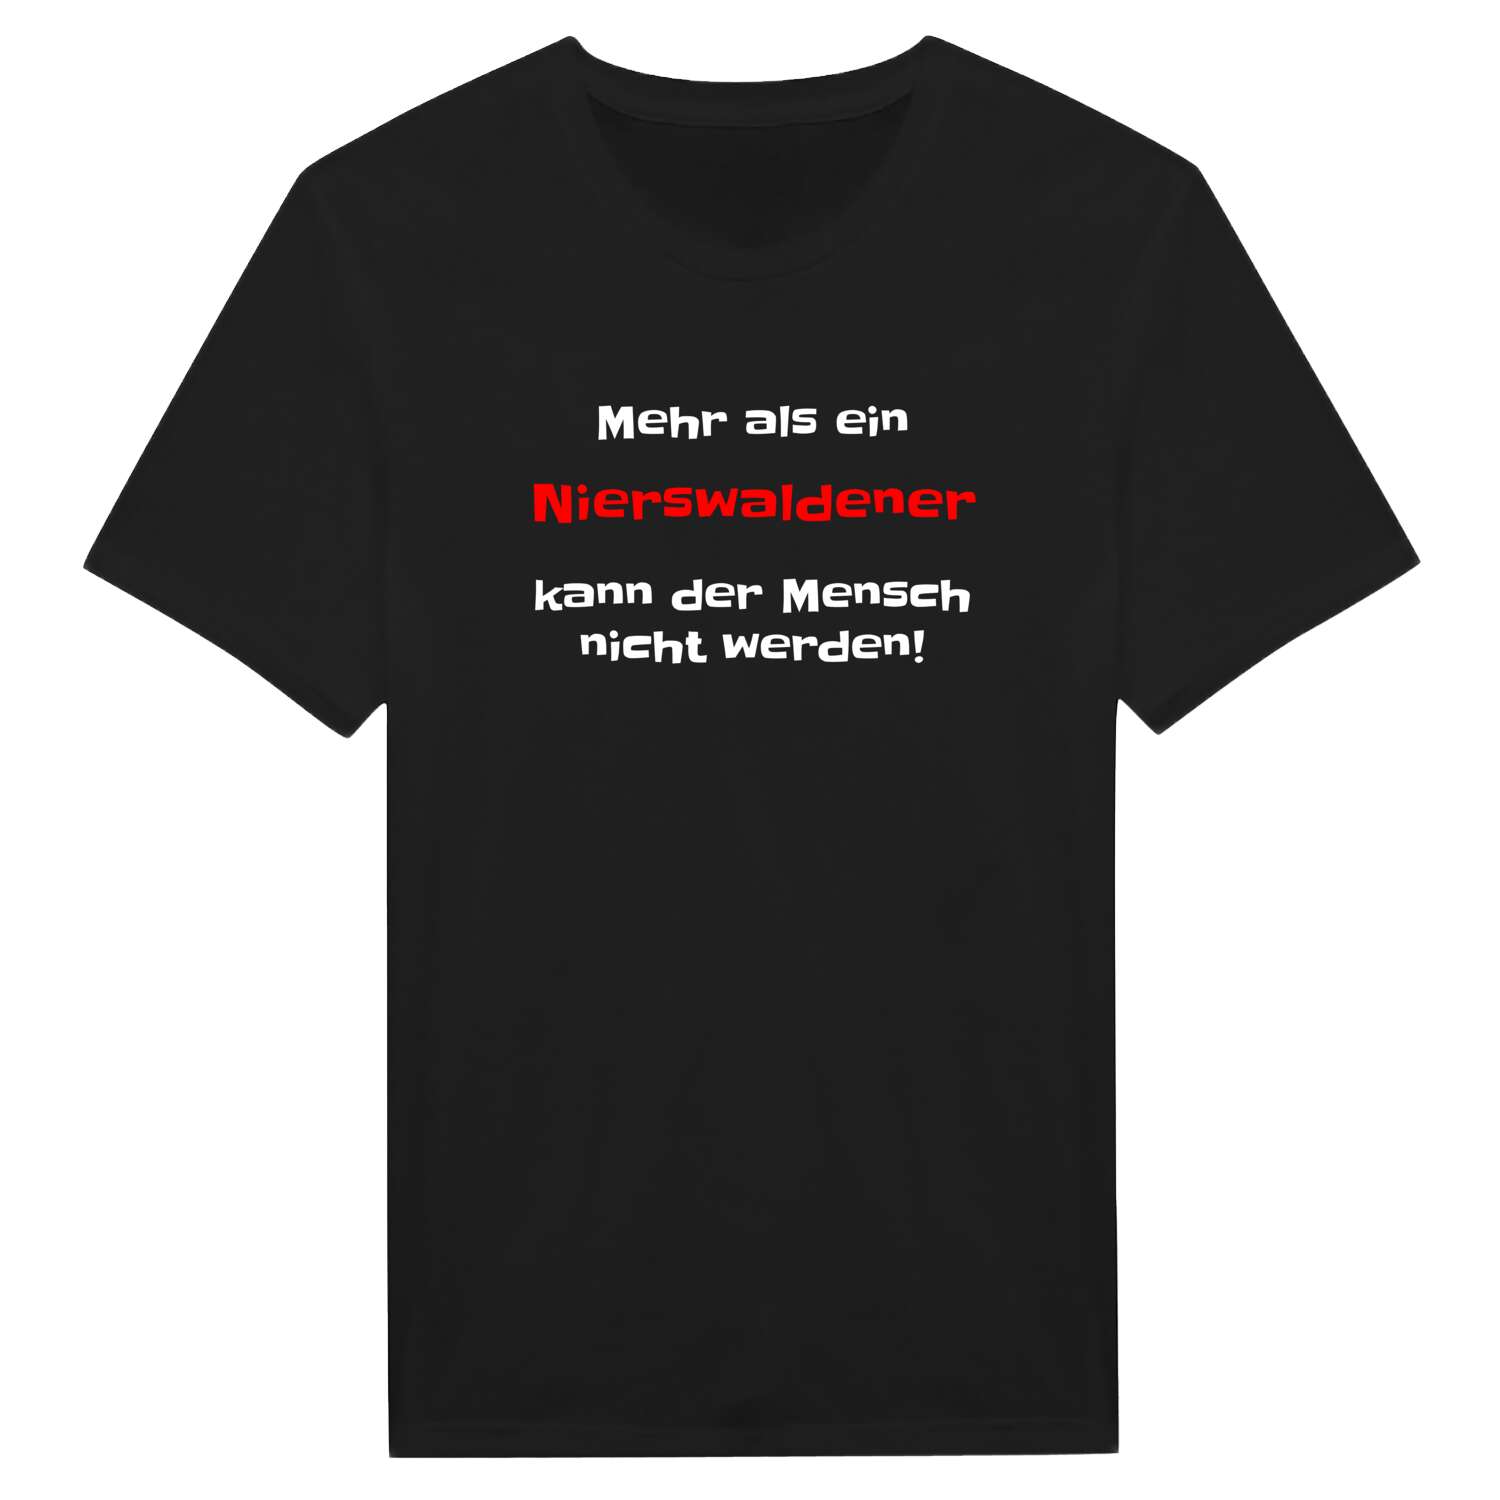 Nierswalde T-Shirt »Mehr als ein«